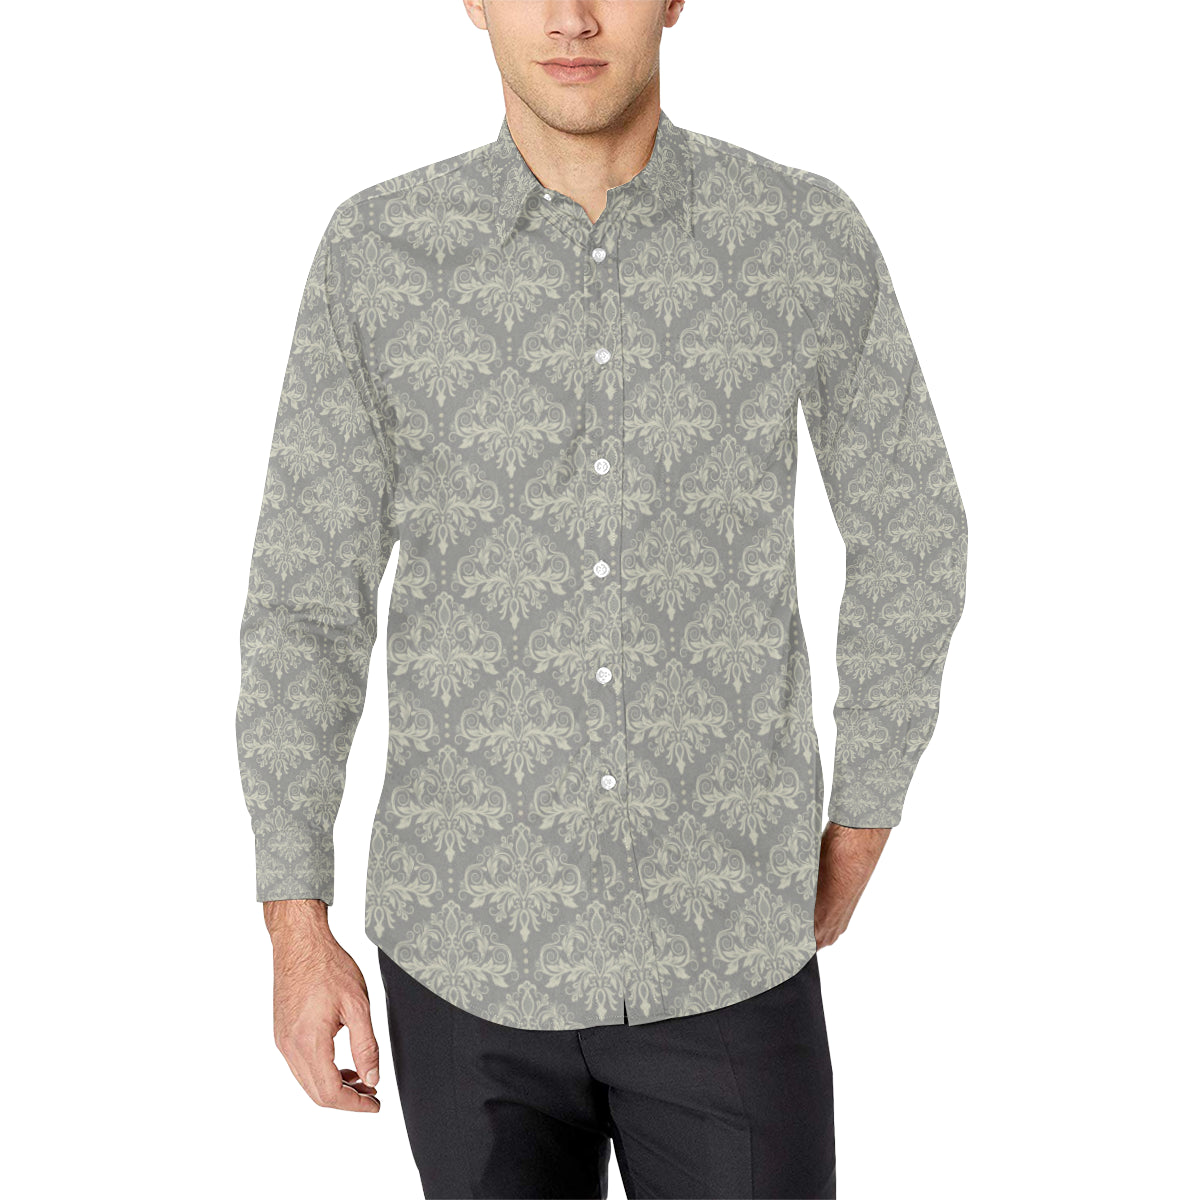 Damask Grey Elegant Print Pattern Men's Long Sleeve Shirt